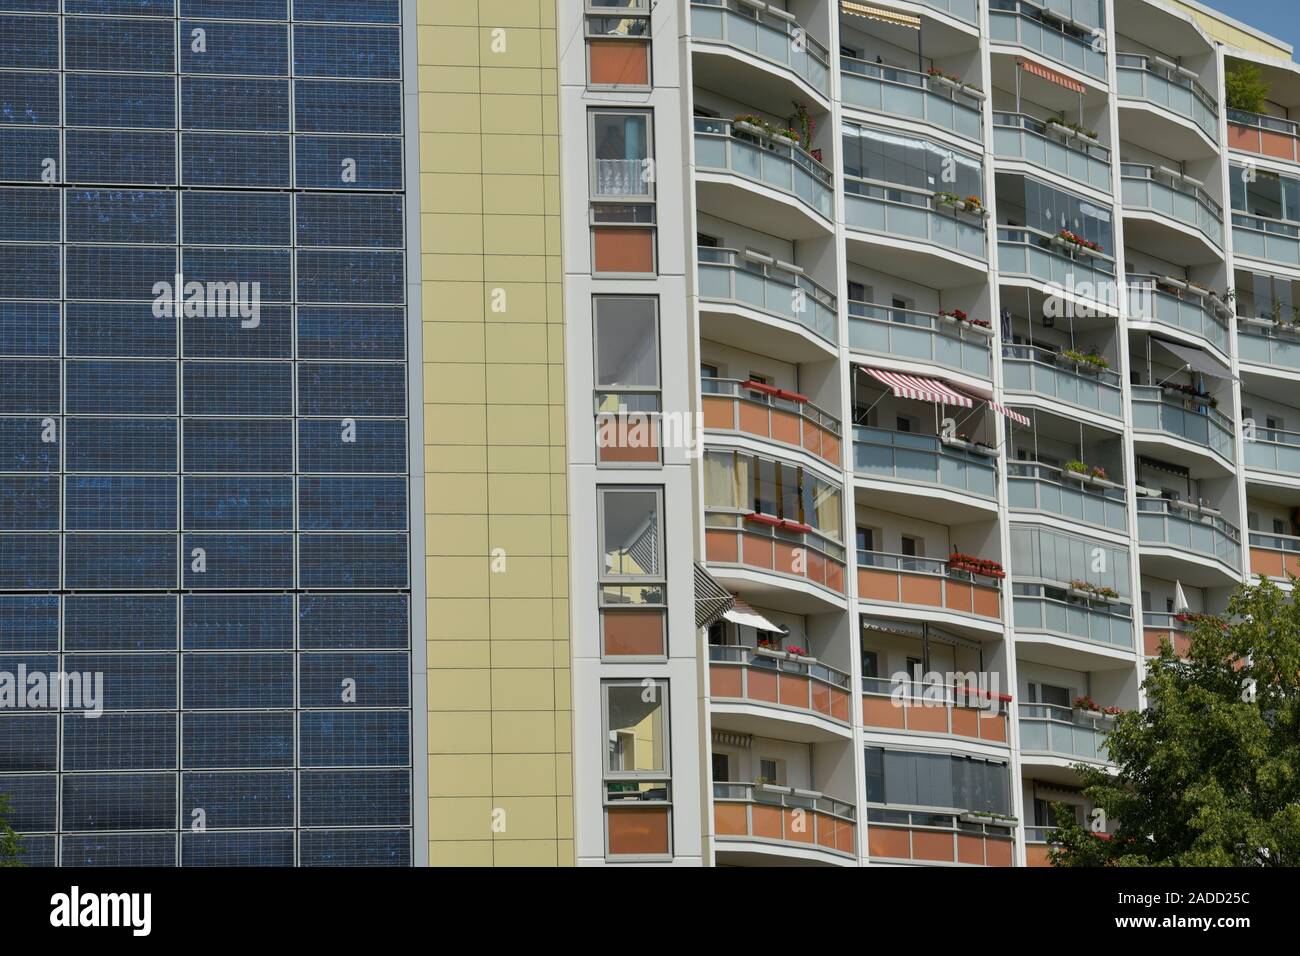 Fotovoltaik-Anlage Ludwig-Renn, Hochhaus,-Straße 35, Berlin Marzahn, Deutschland, Banque D'Images